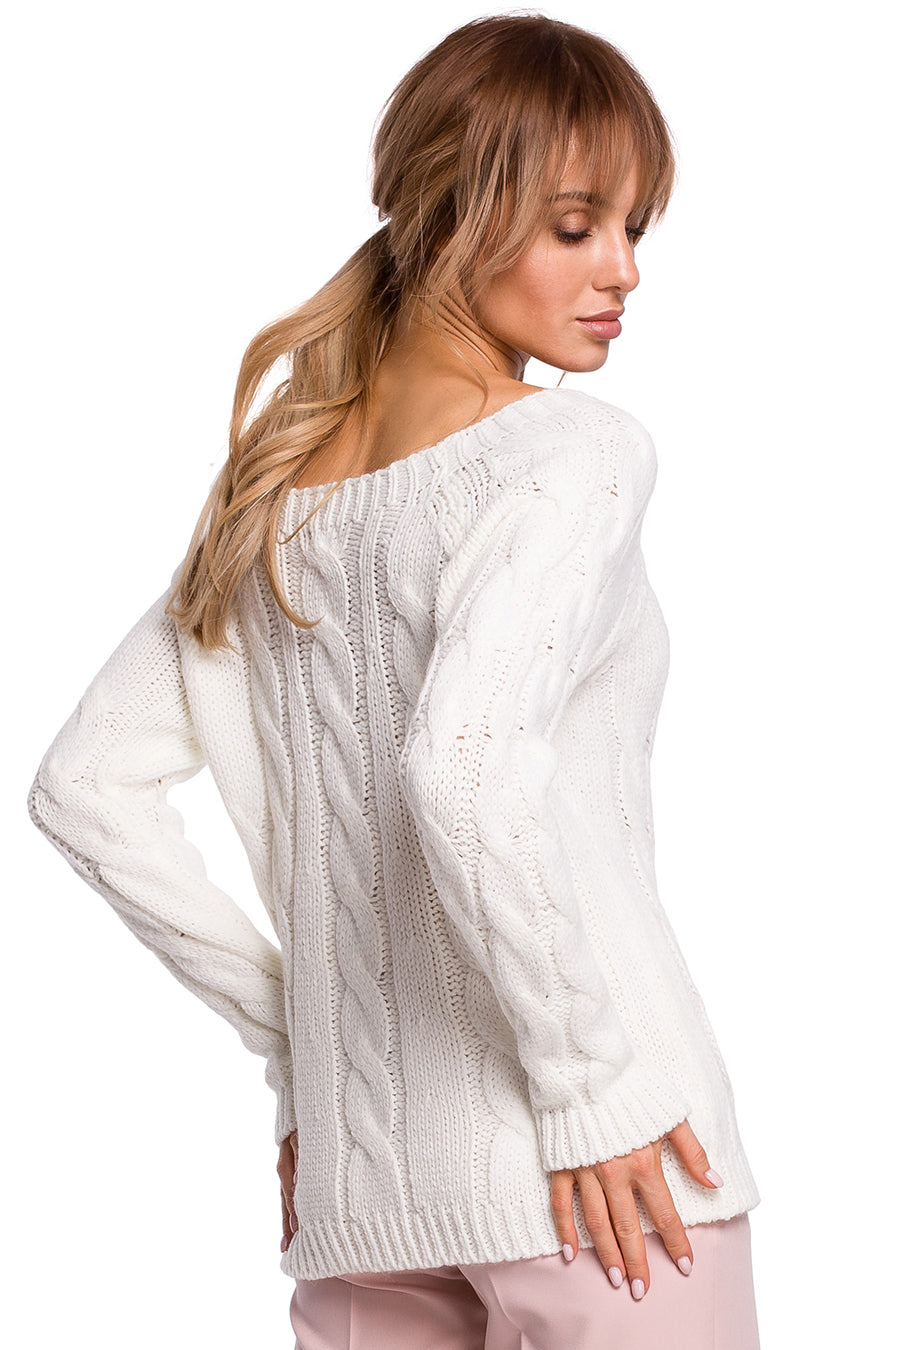 Γυναικείο πουλόβερ Kendria, Λευκό 4